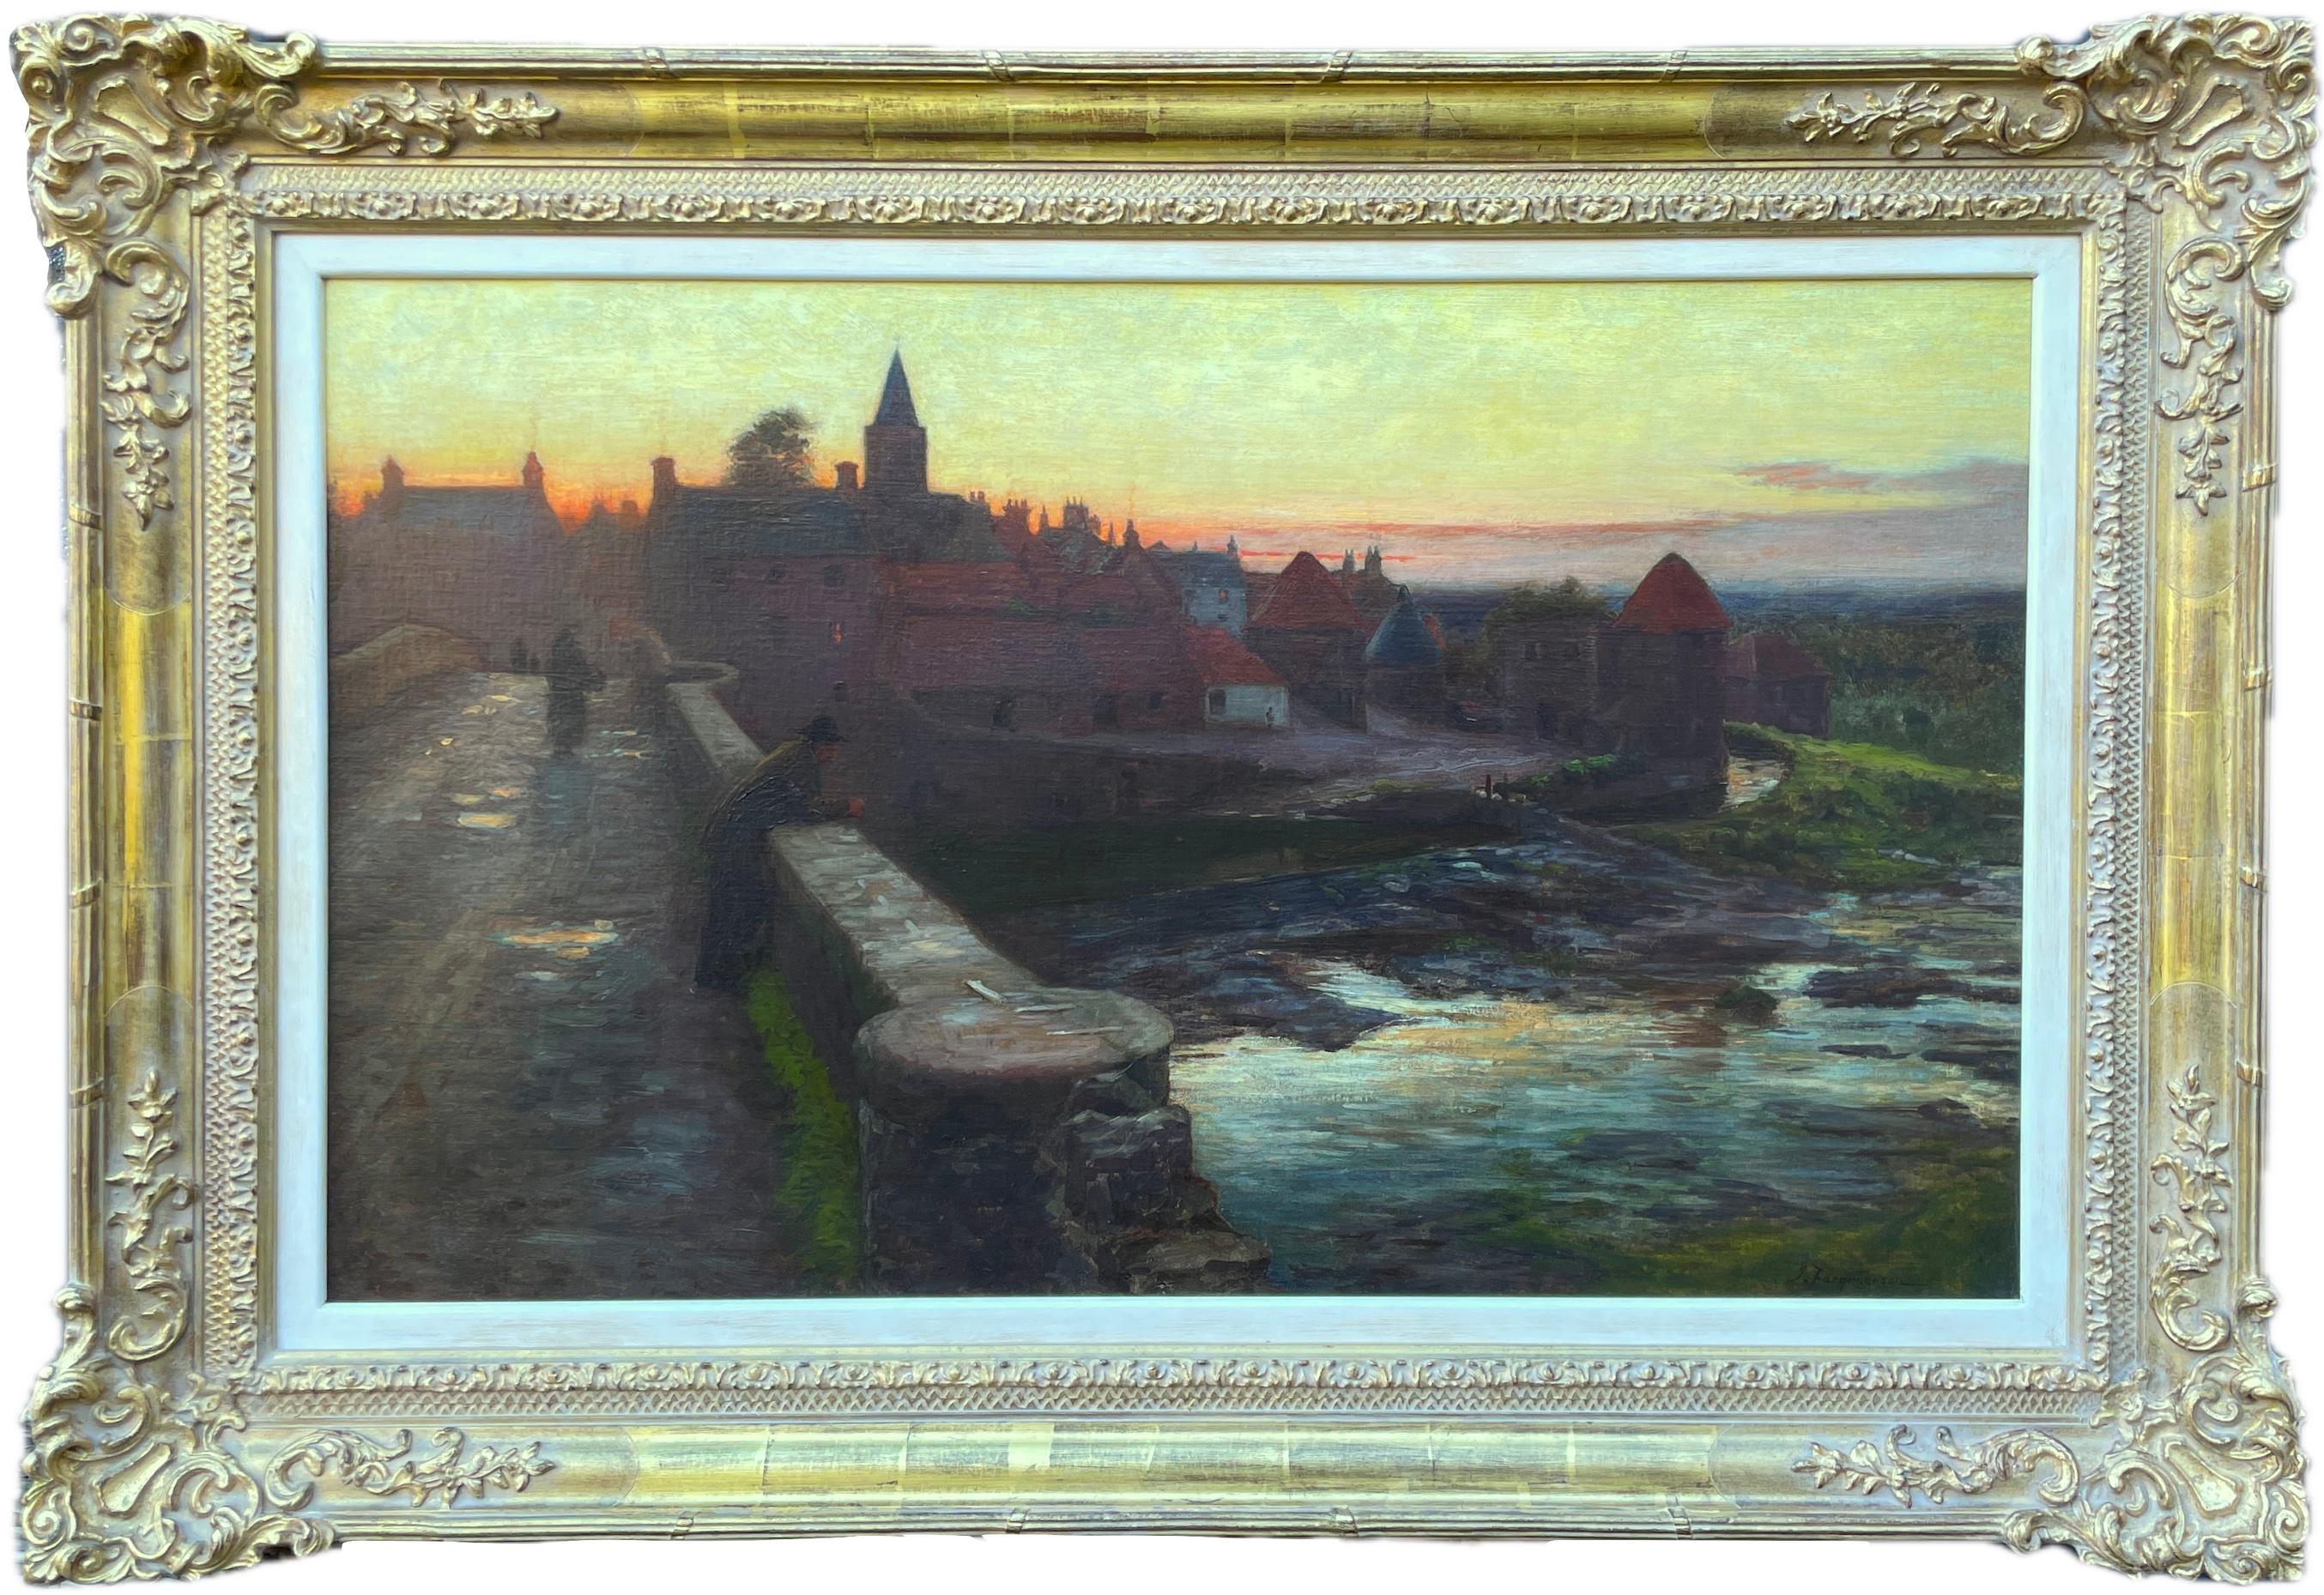 Öl auf Leinwand von Joseph Farquharson RA (1846-1935)                                                        Blick auf den Sonnenuntergang über einer schottischen Townes von einer Steinbrücke aus.

Joseph Farquharson RA 4. Mai 1846 - 15. April 1935)